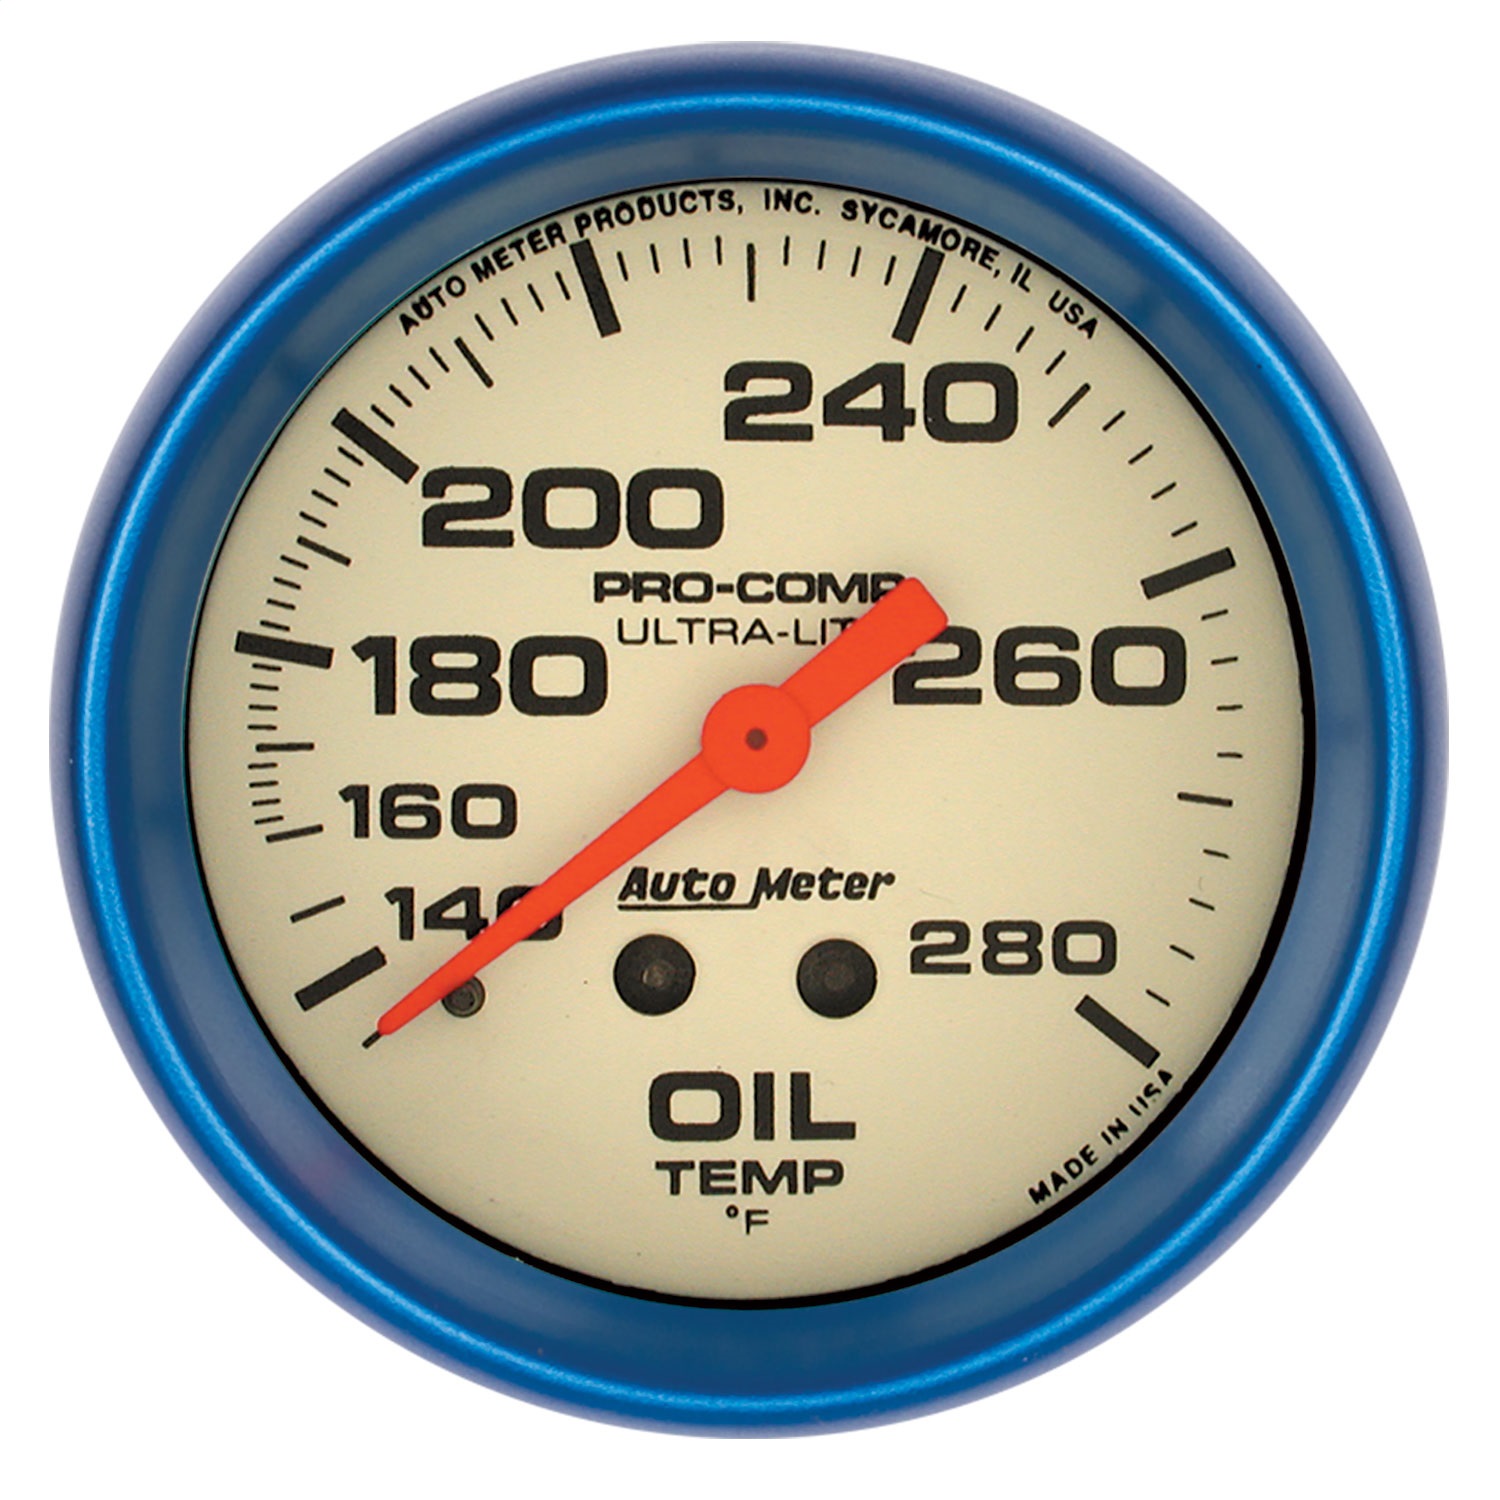 Auto Meter Auto Meter 4541 Ultra-Nite; Oil Temperature Gauge